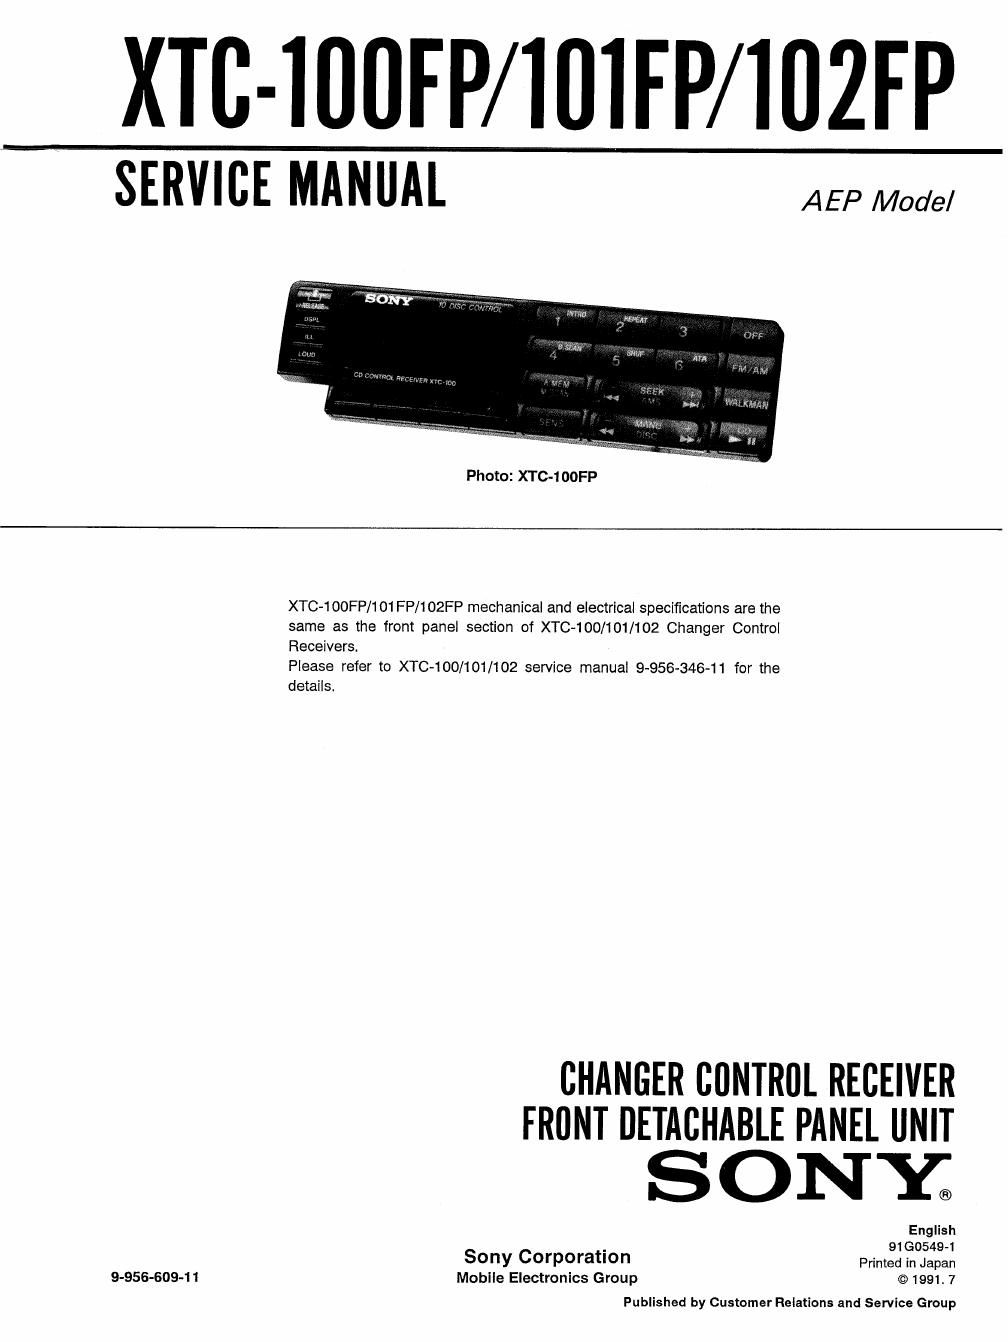 sony xtc 100 fp service manual